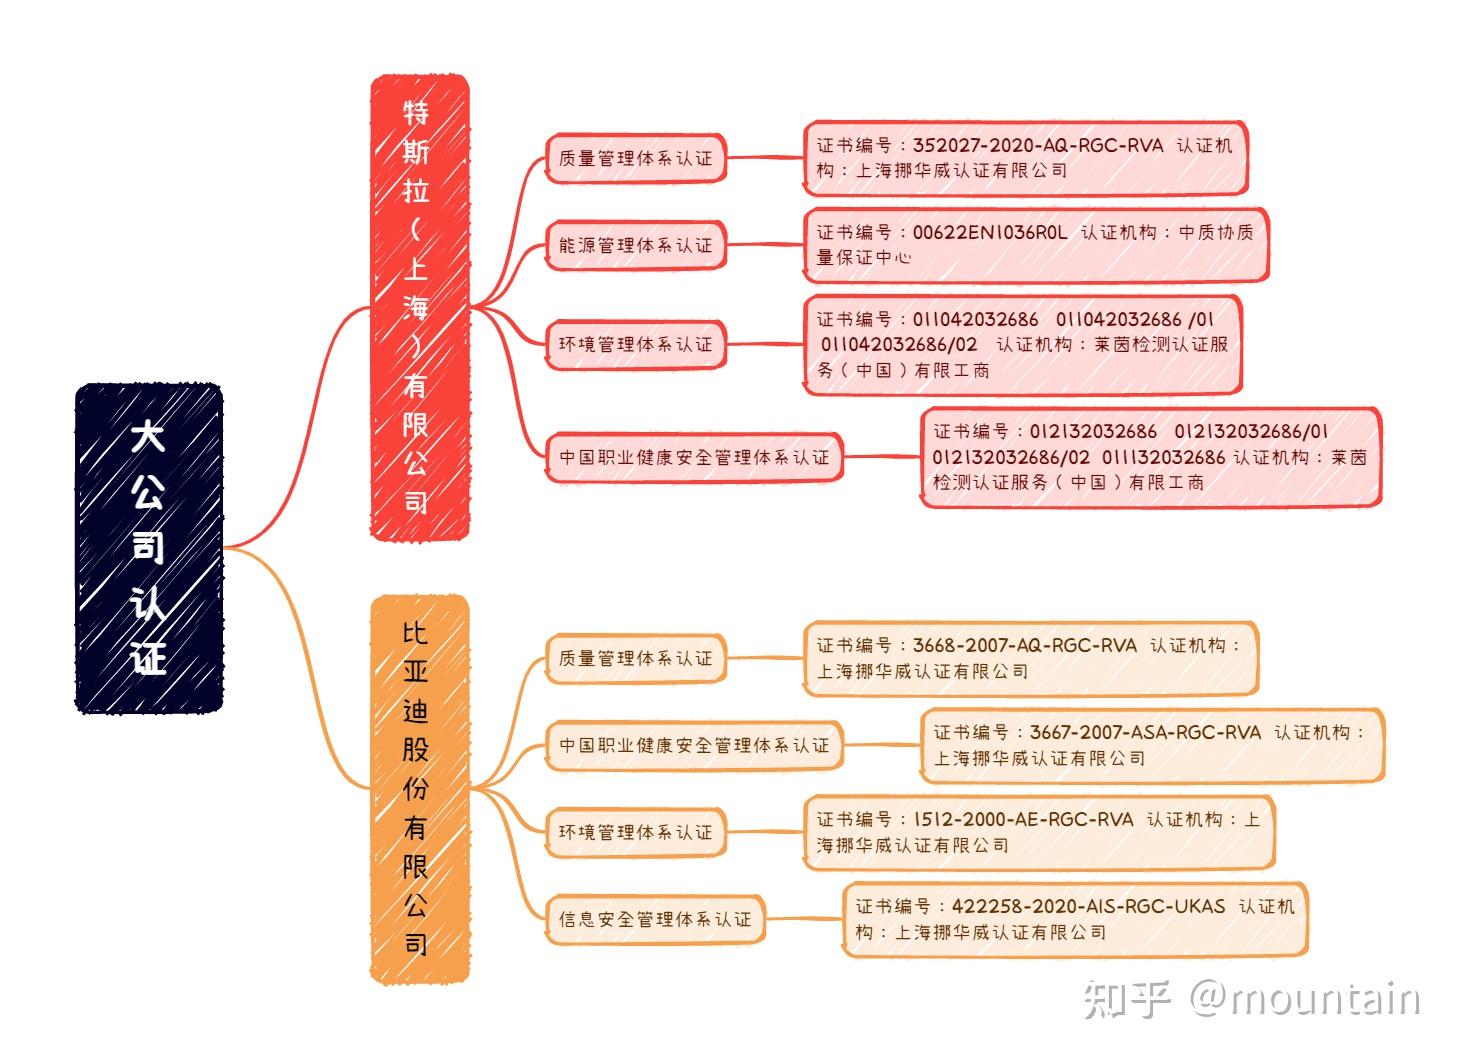 中企认证顺利通过IAS管理体系认证认可--广东中企认证服务有限公司官网